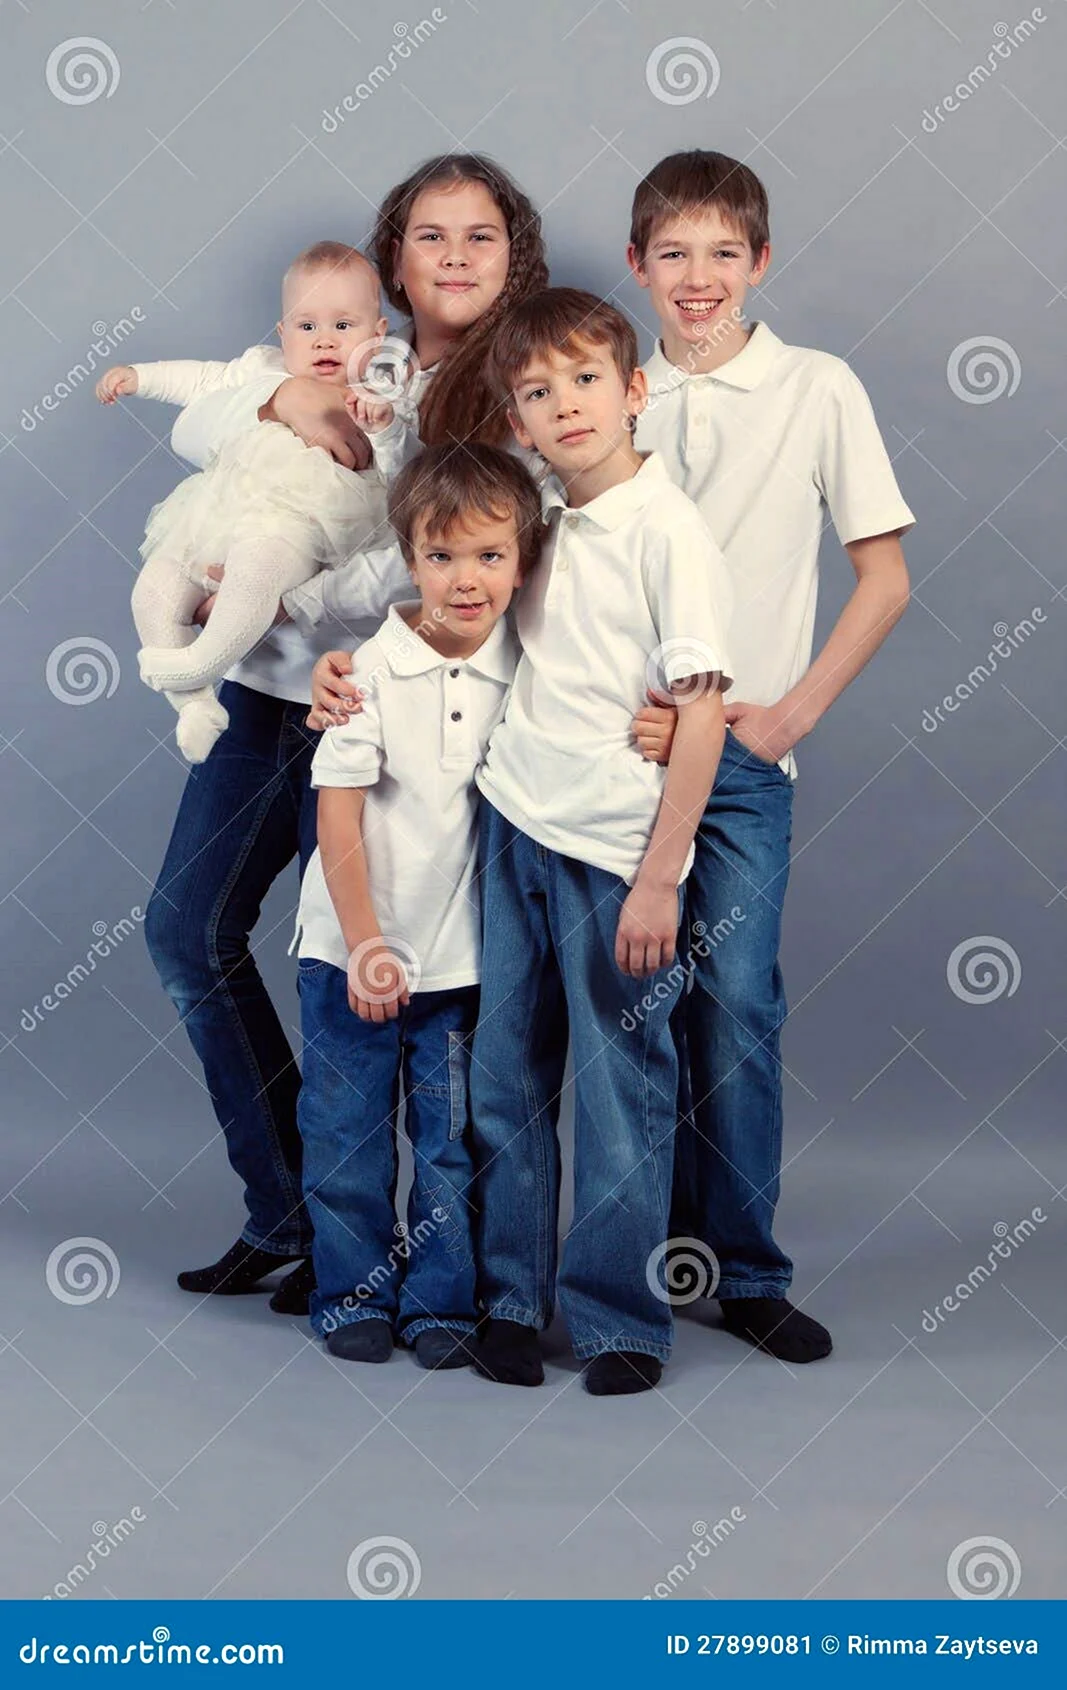 Фотосессия в белых рубашках и джинсах семейная